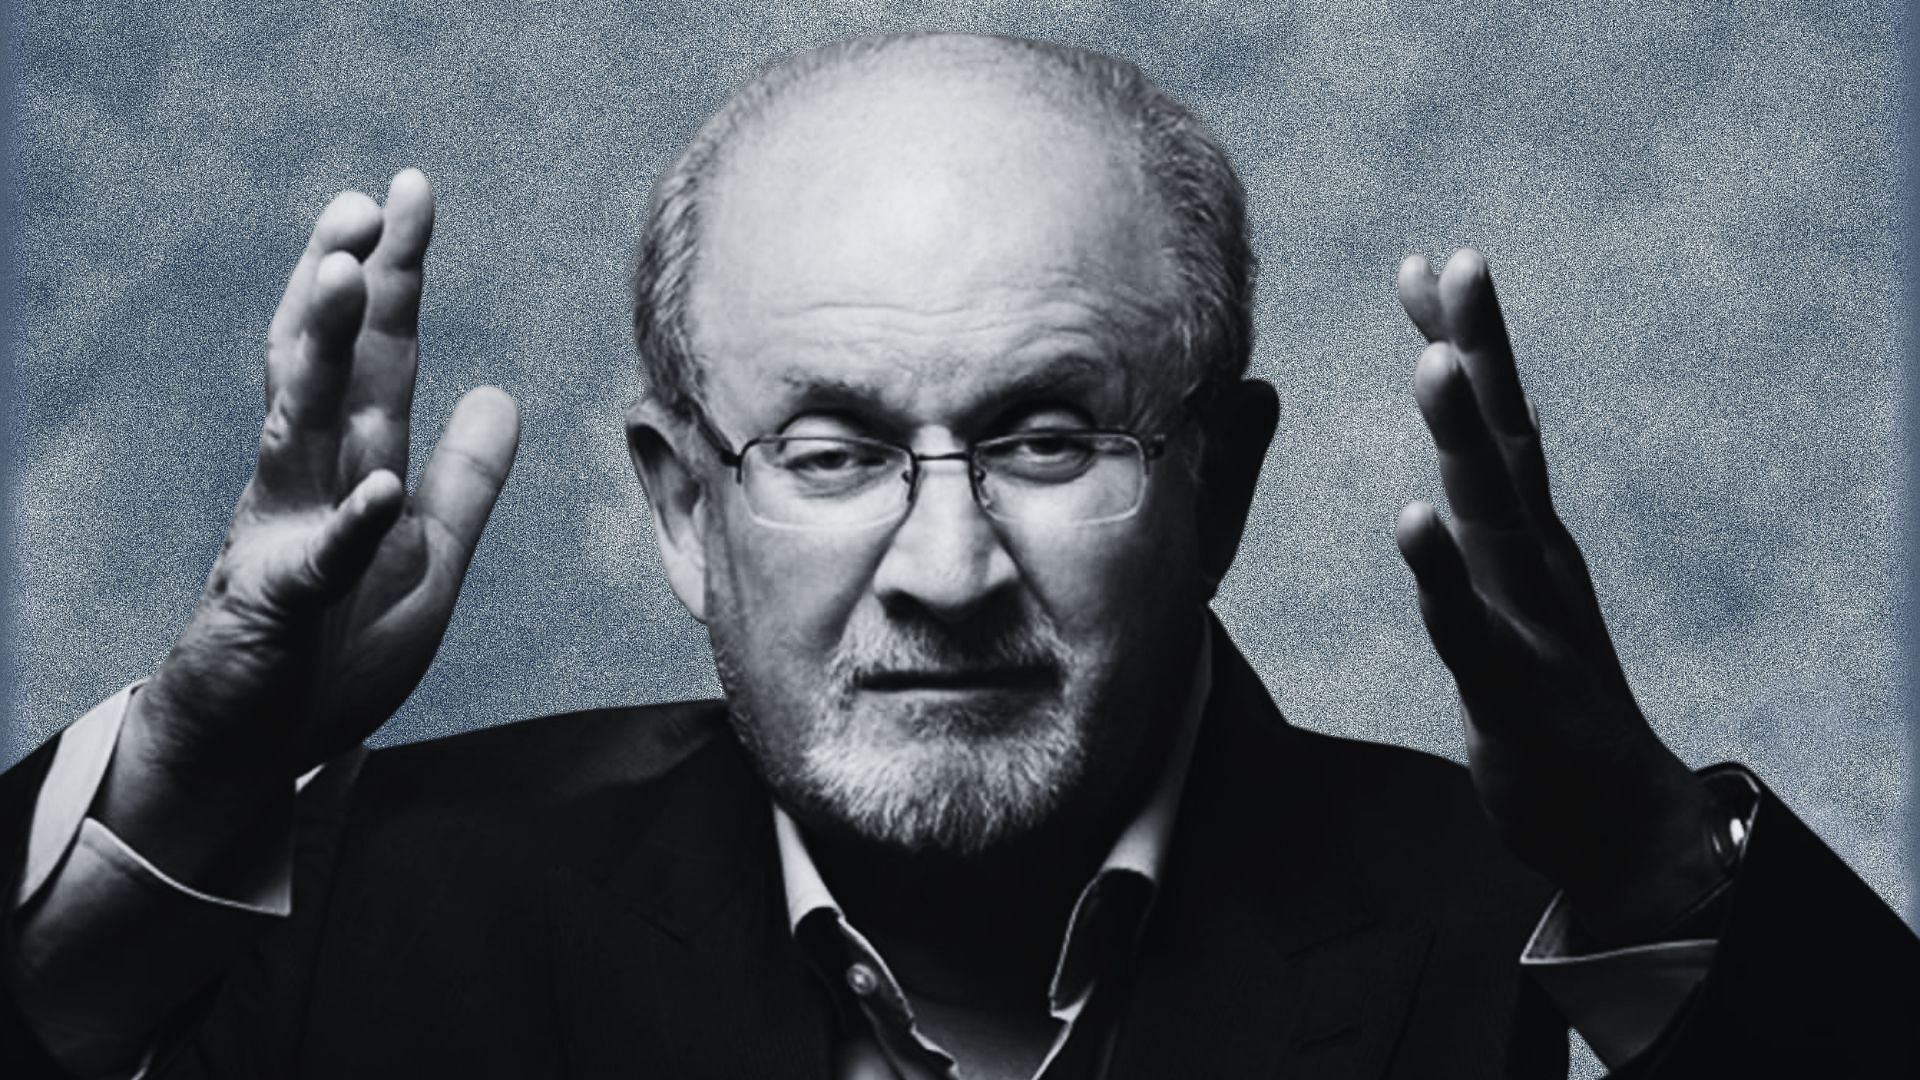 <div class="paragraphs"><p>Salman Rushdie: नकली नाम,सर पर फतवा- रुश्दी ने 9 साल का 'अज्ञातवास' कैसे गुजारा?</p></div>